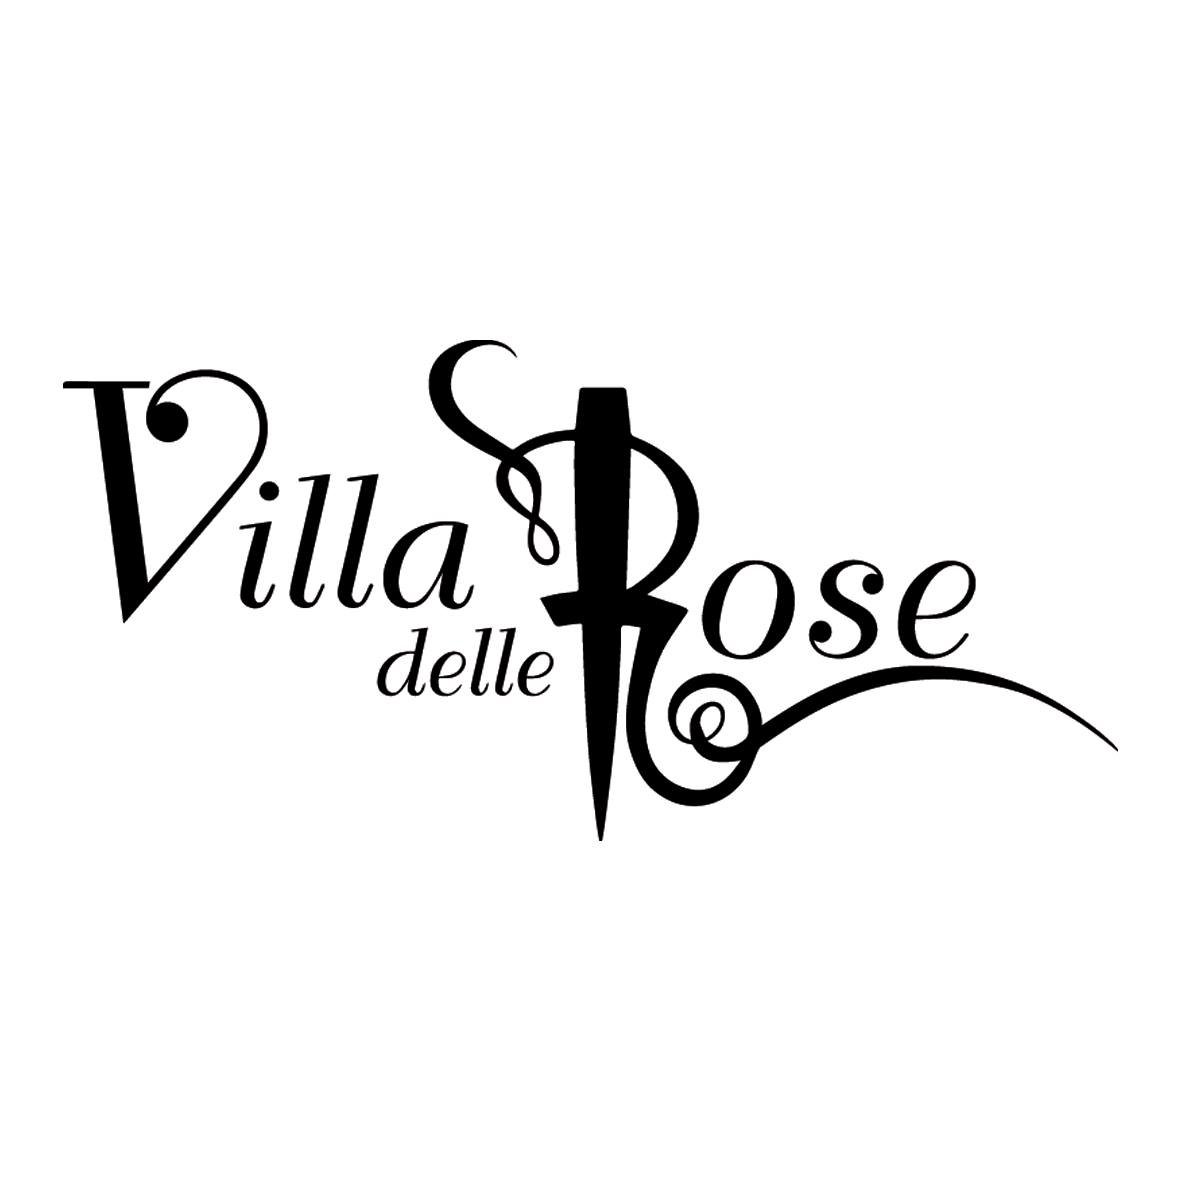 Inizia il secondo week end alla Discoteca Villa delle Rose di Misano Adriatico